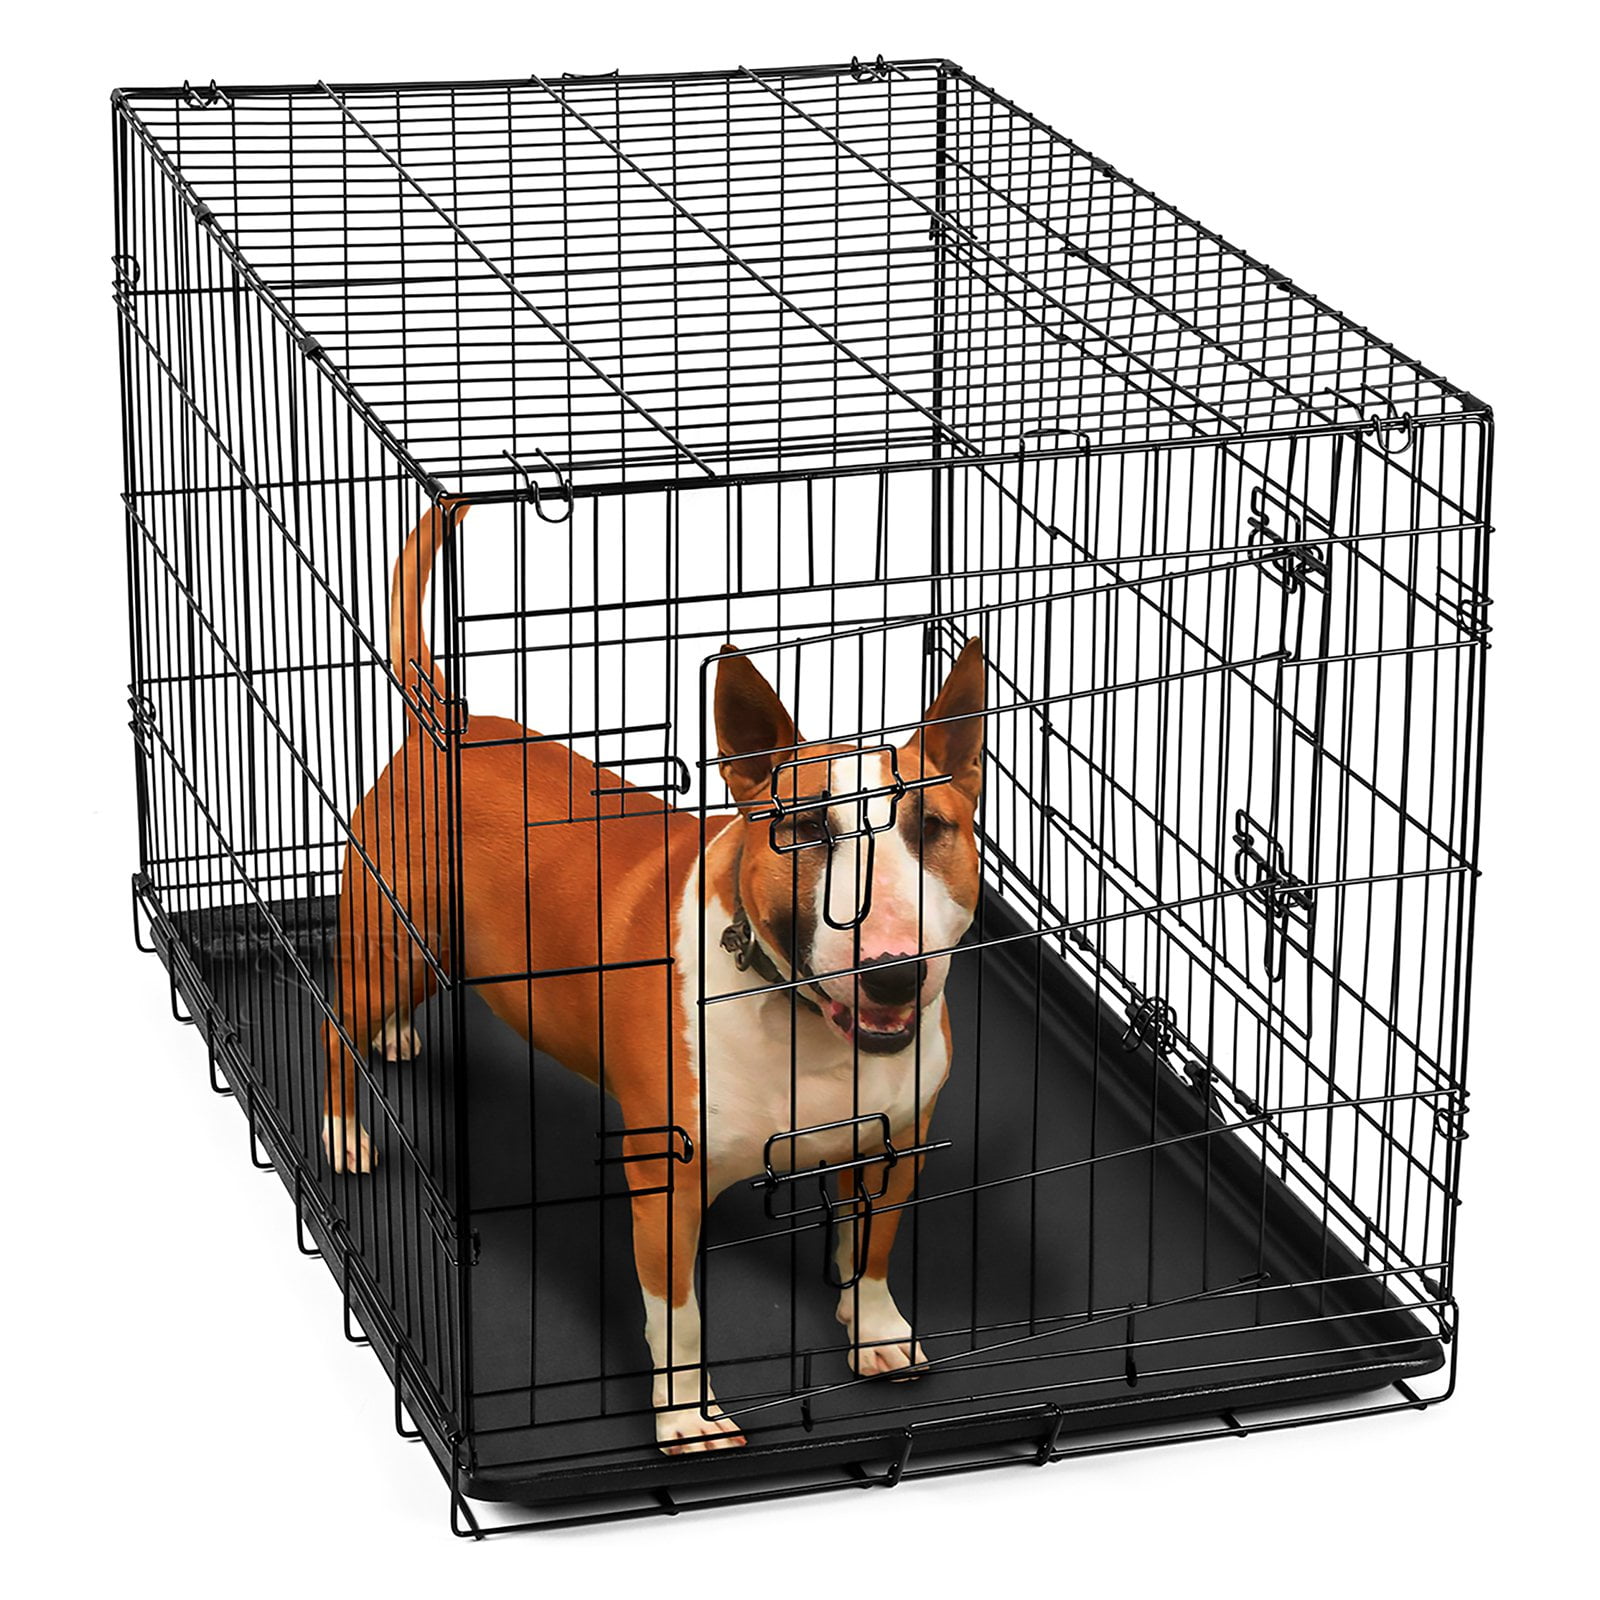 Клетка для собак 3. Клетка для собак papillon wire Cage 2 двери 151207 107х68х75 см. Midwest i Crate Folding Double Door Dog Crate 91х58х64h Мидвест белая. Вольер Доглэнд. Dogland вольер для собак.